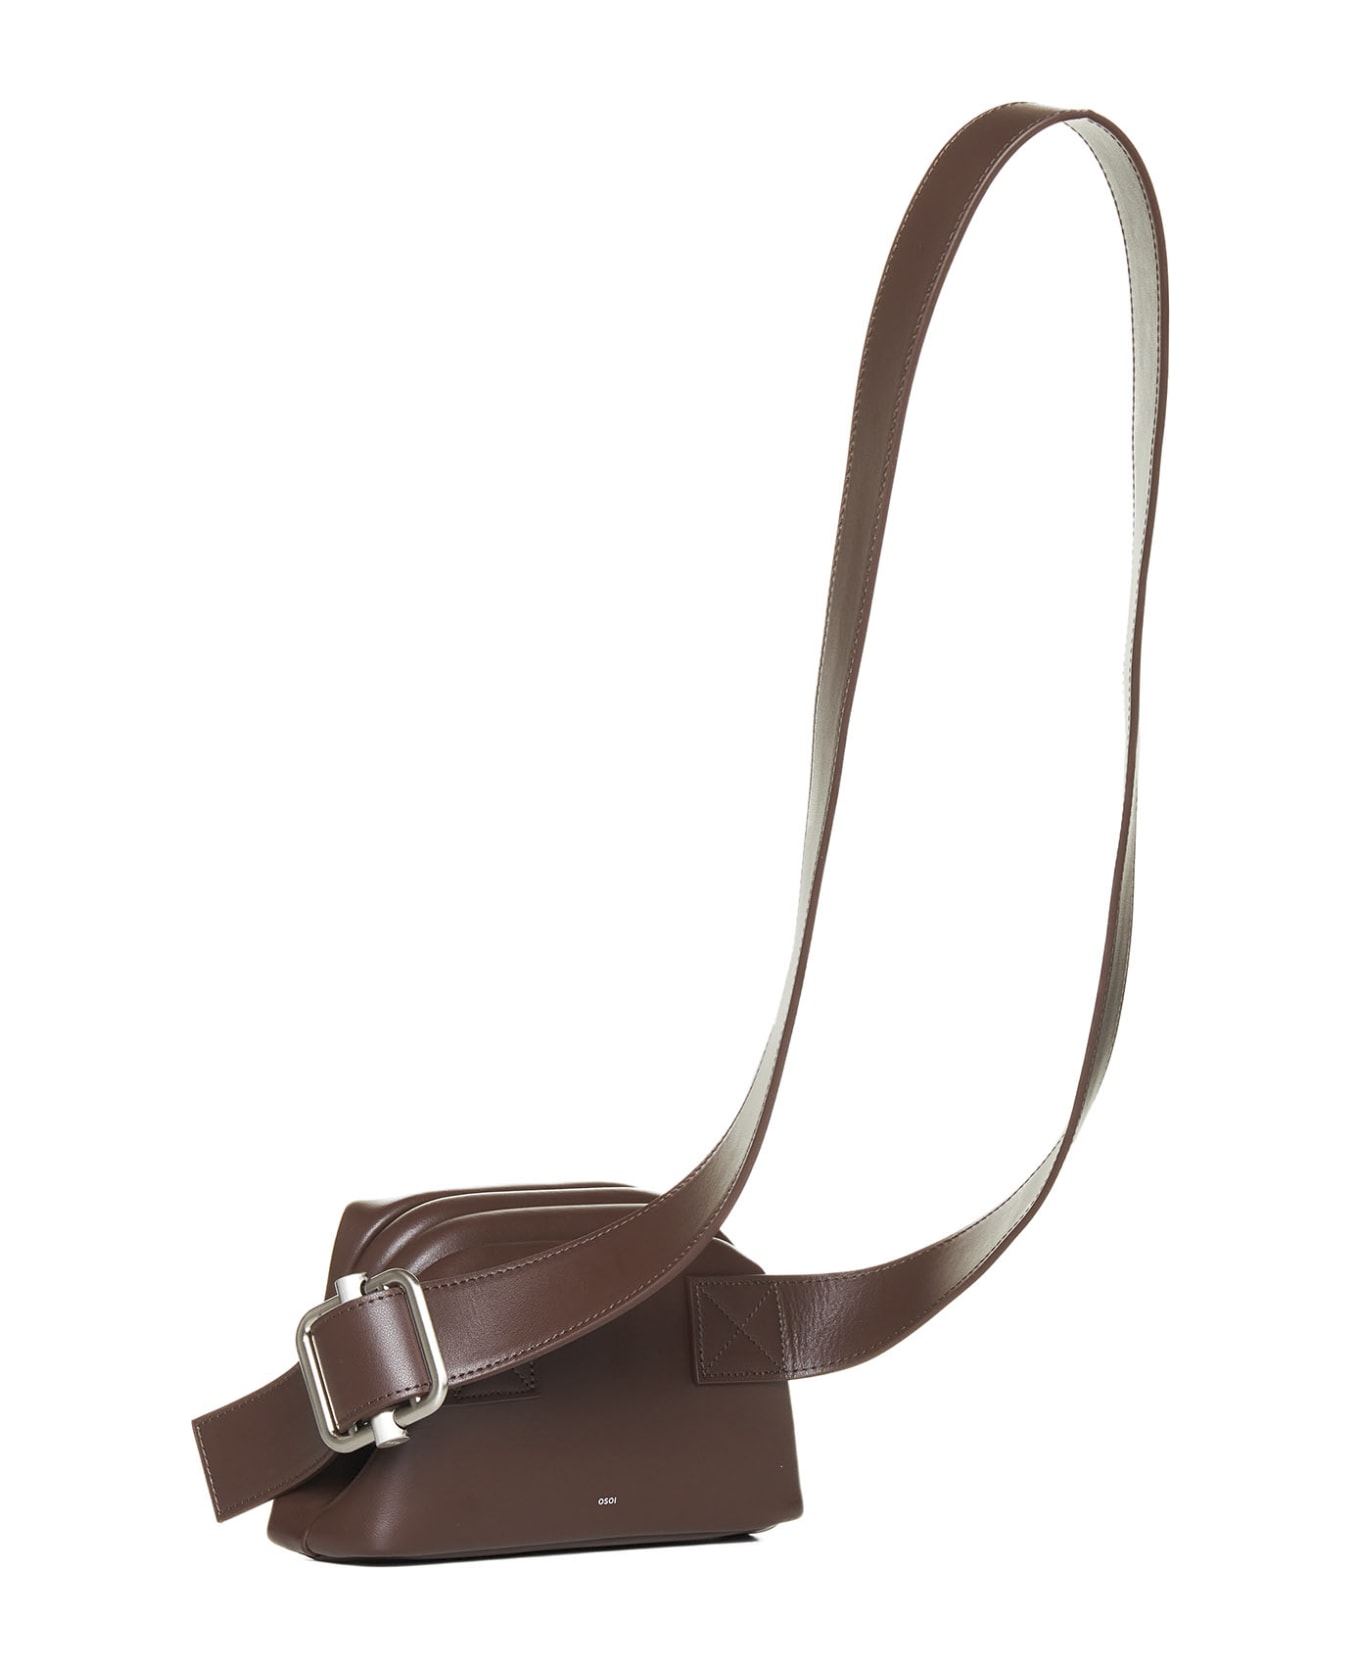 OSOI Shoulder Bag - Choco brown ショルダーバッグ